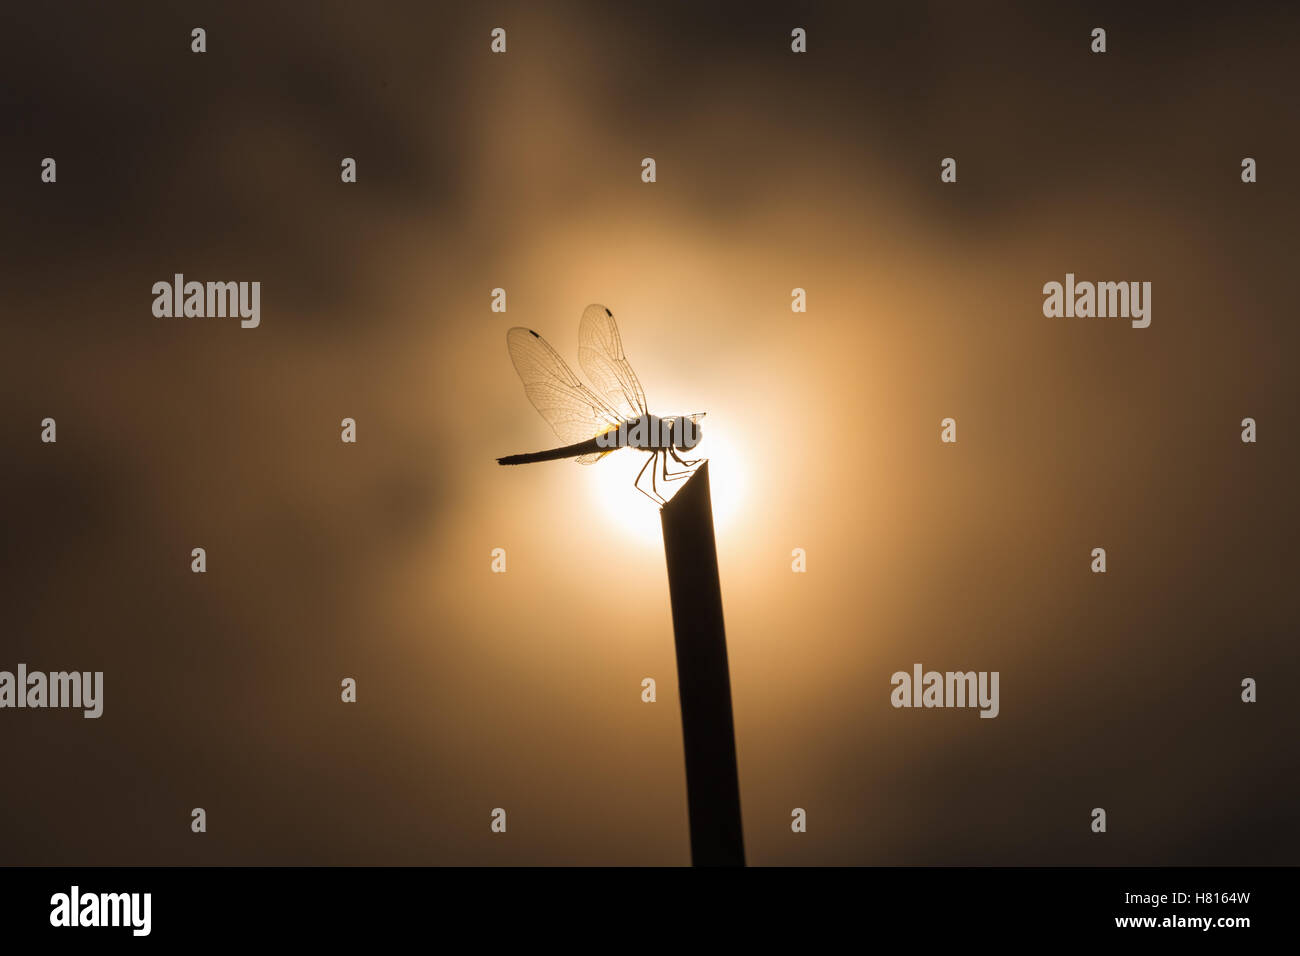 Libellule Silhouette sur stick en position centrale de soleil et de nuages flous en arrière-plan en basse Tonalité des touches. Banque D'Images